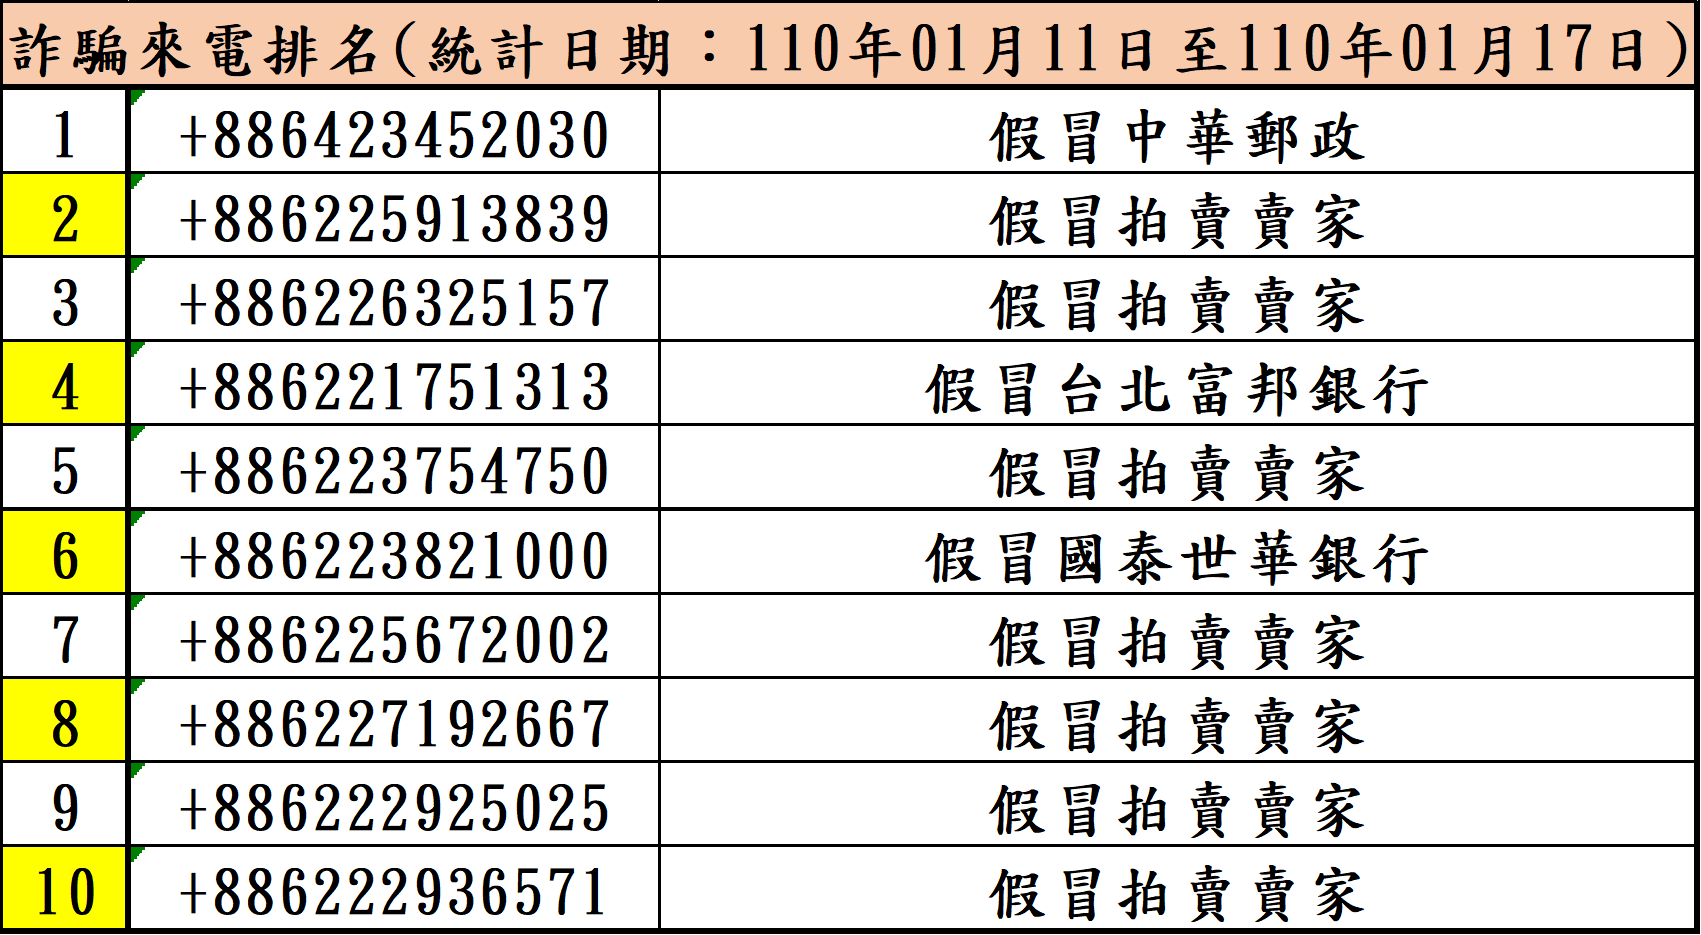 165詐騙來電排名(110年1月11日至110年01月17日)